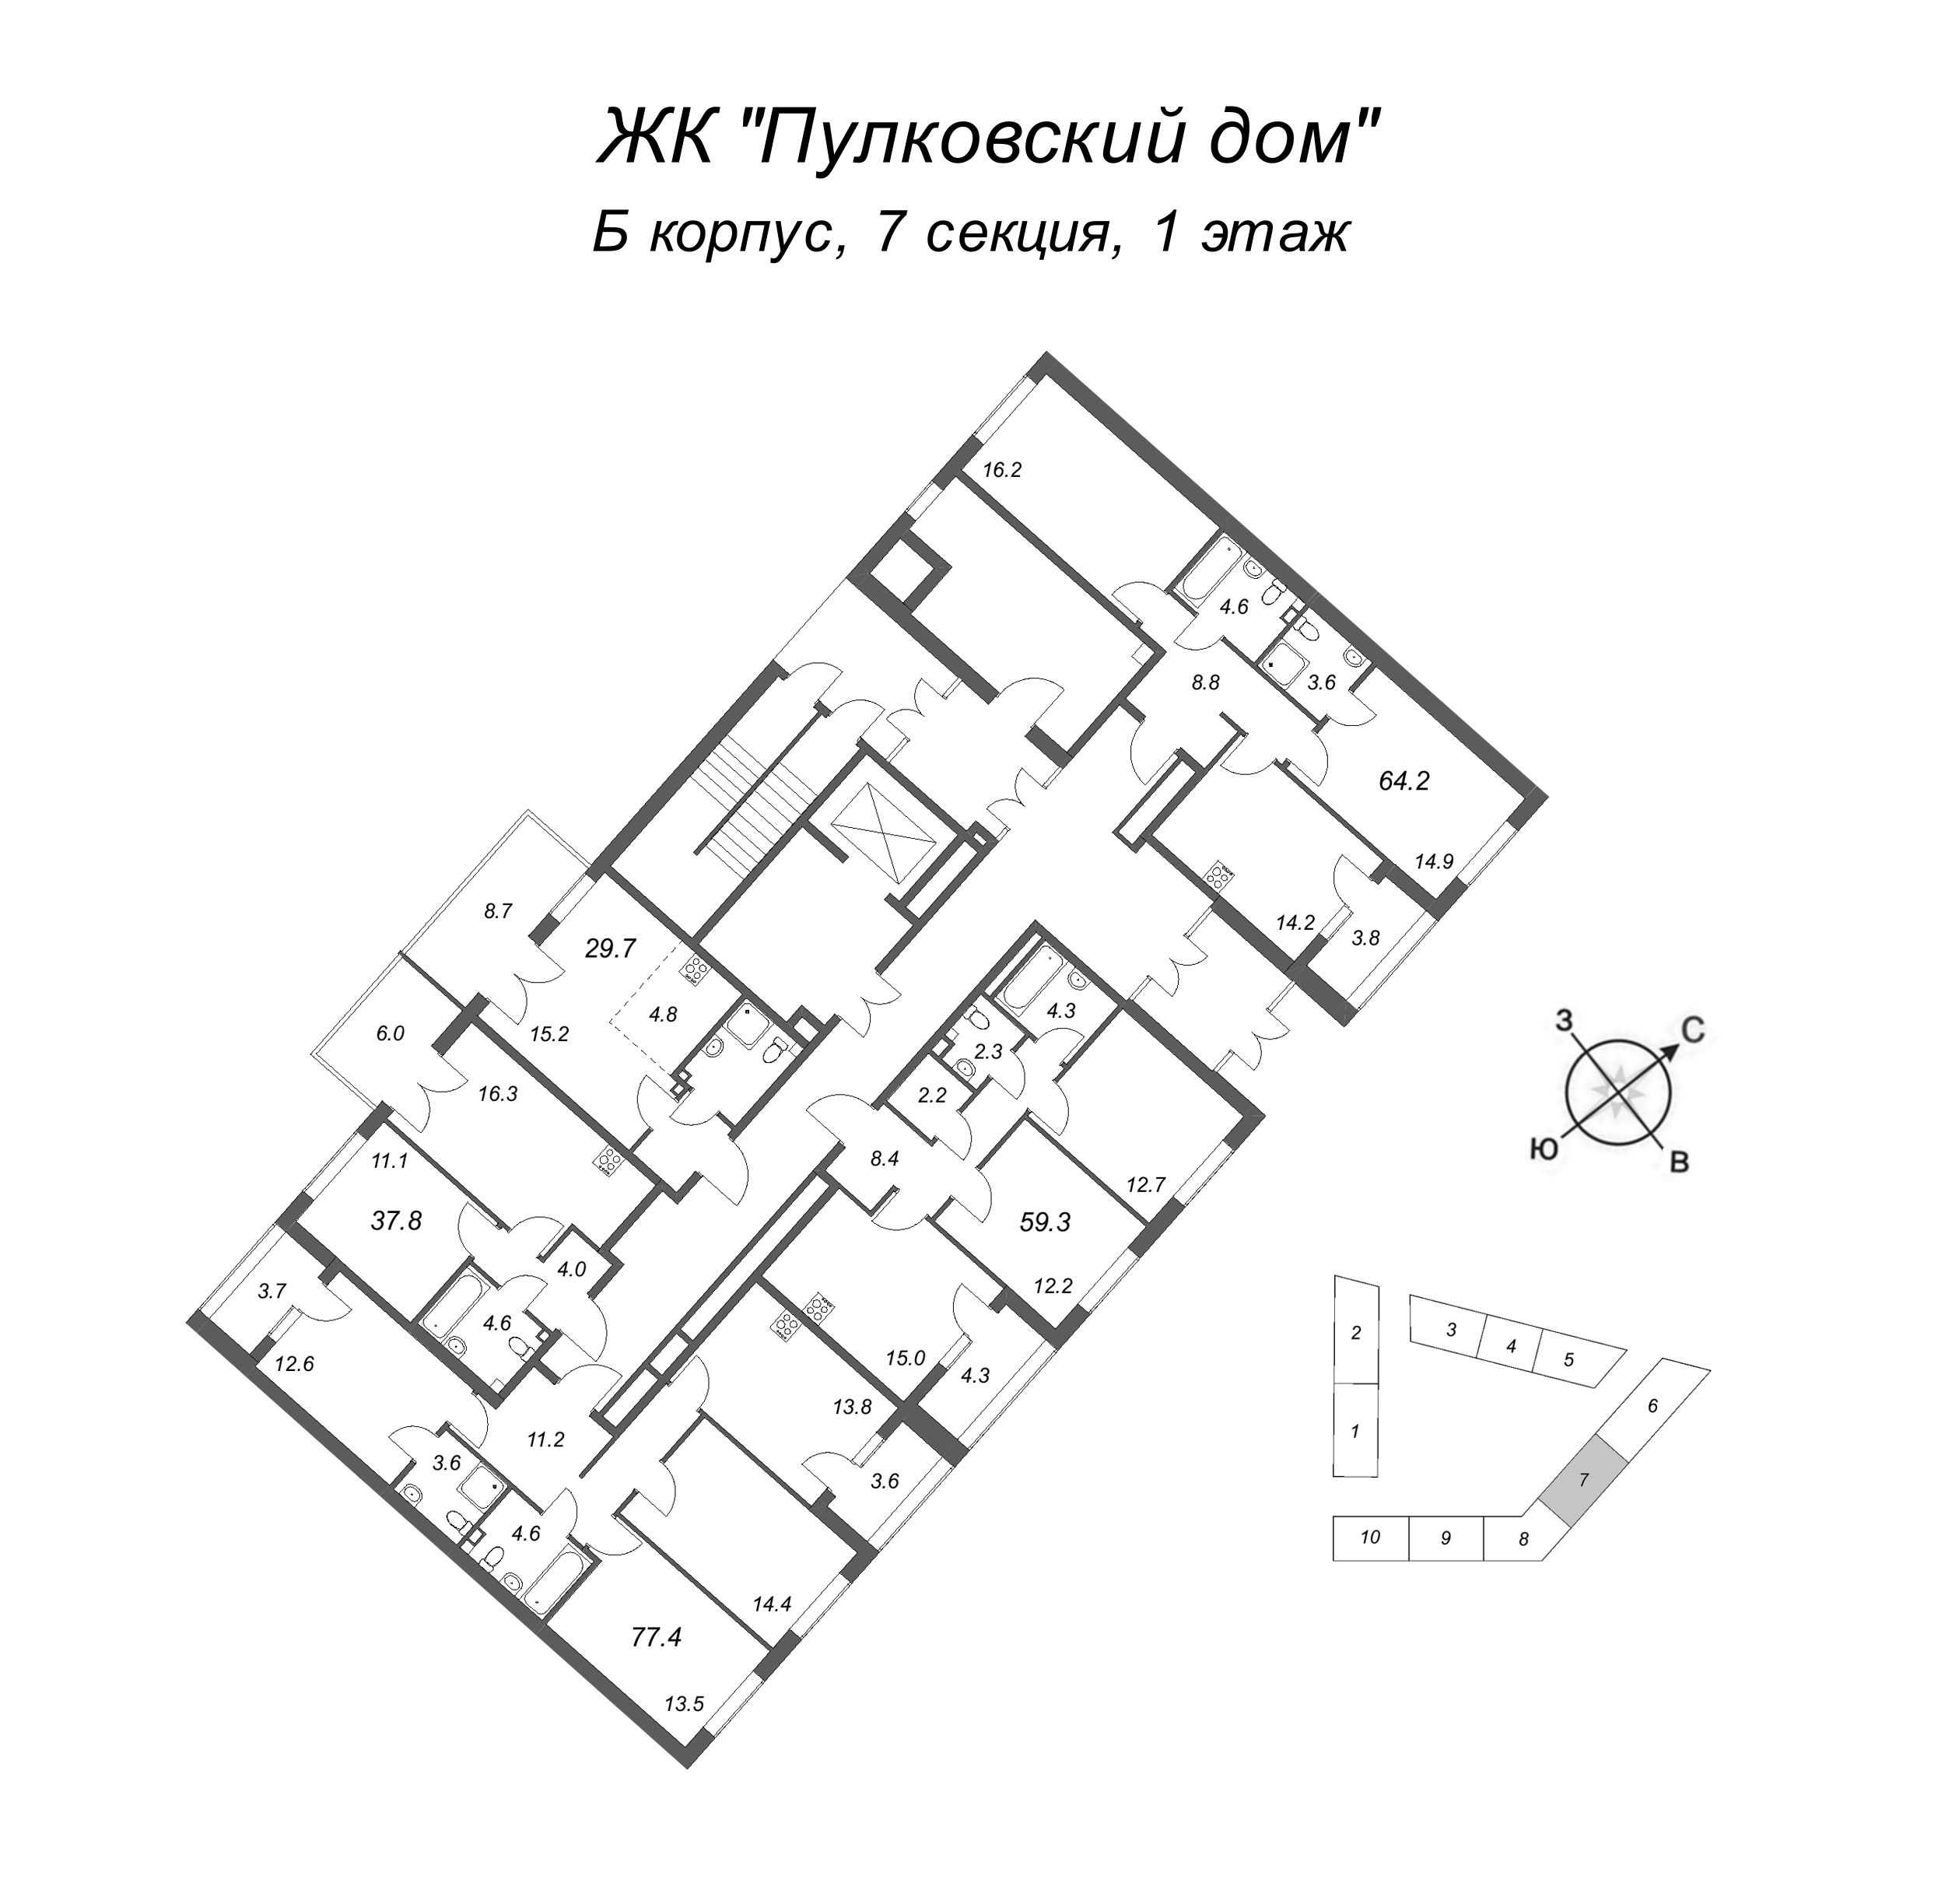 2-комнатная квартира, 64.2 м² в ЖК "Пулковский дом" - планировка этажа